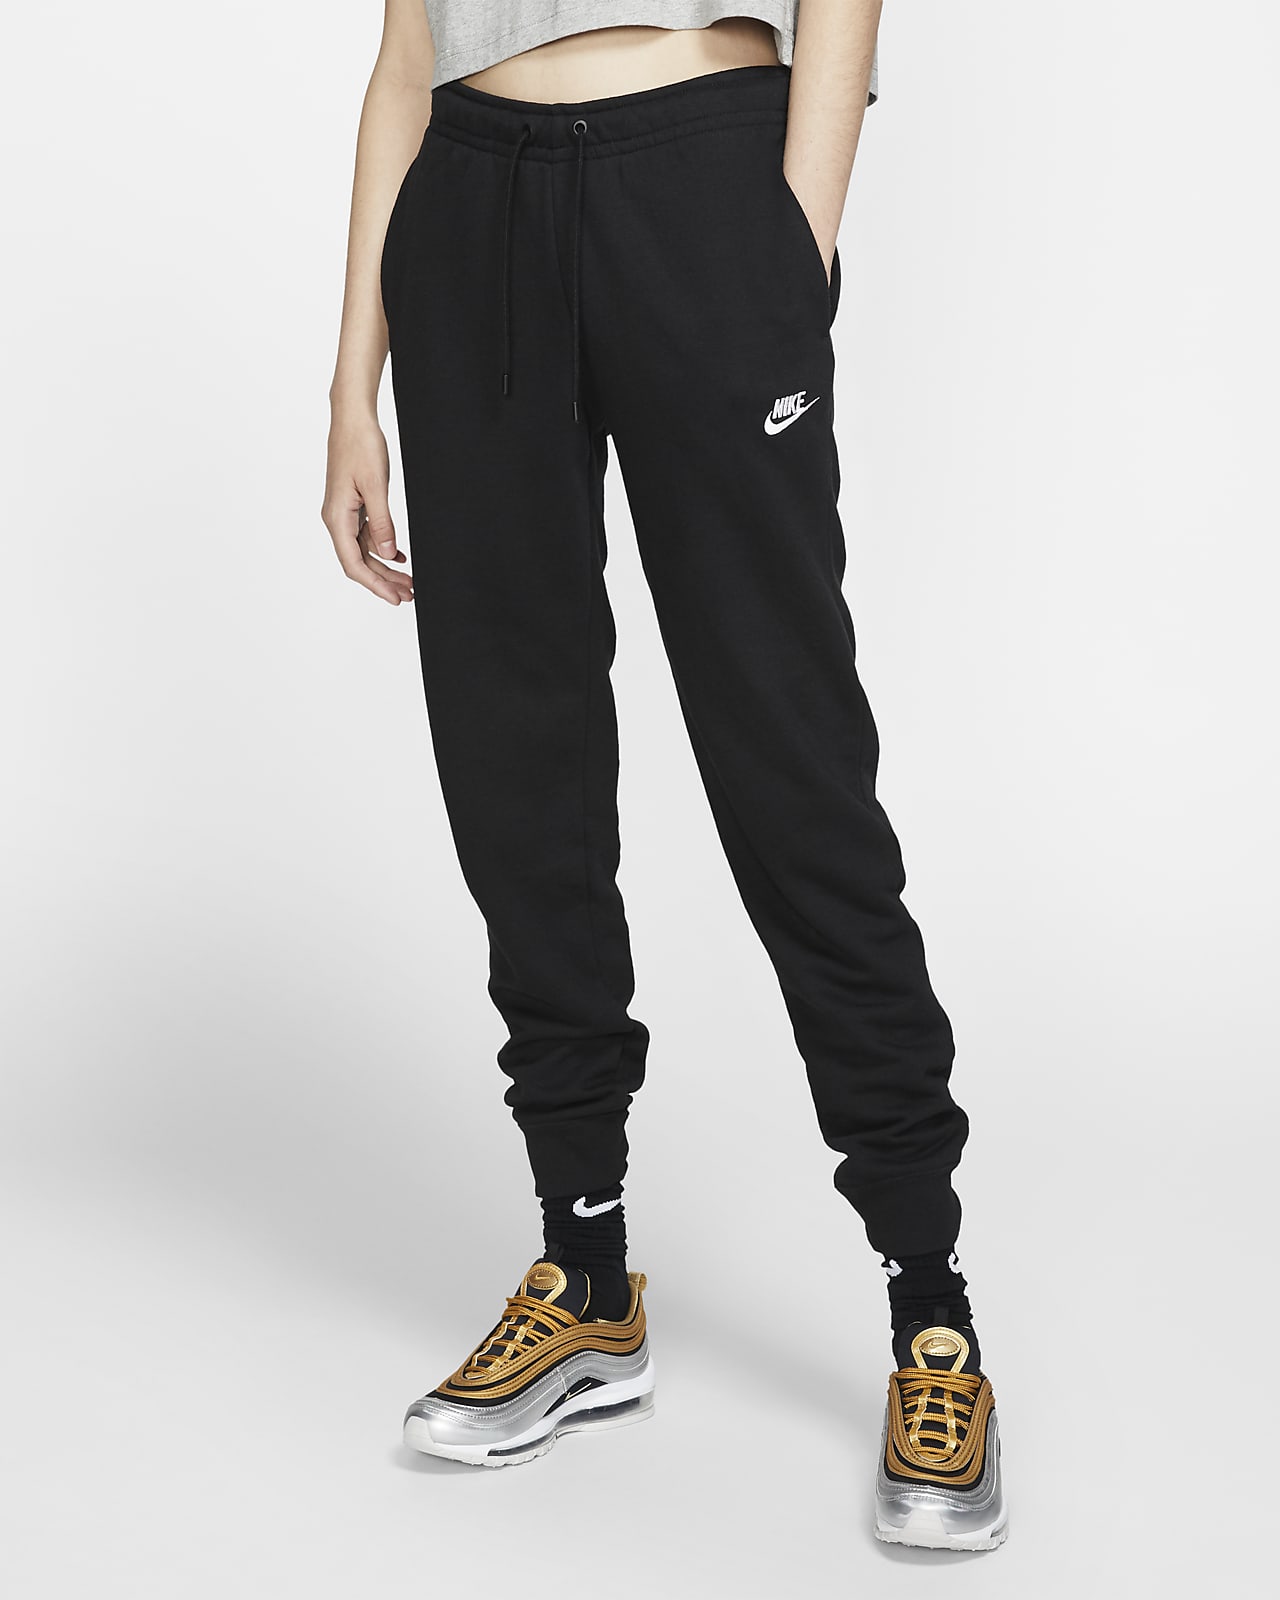 Pants de Fleece para mujer Sportswear Nike.com